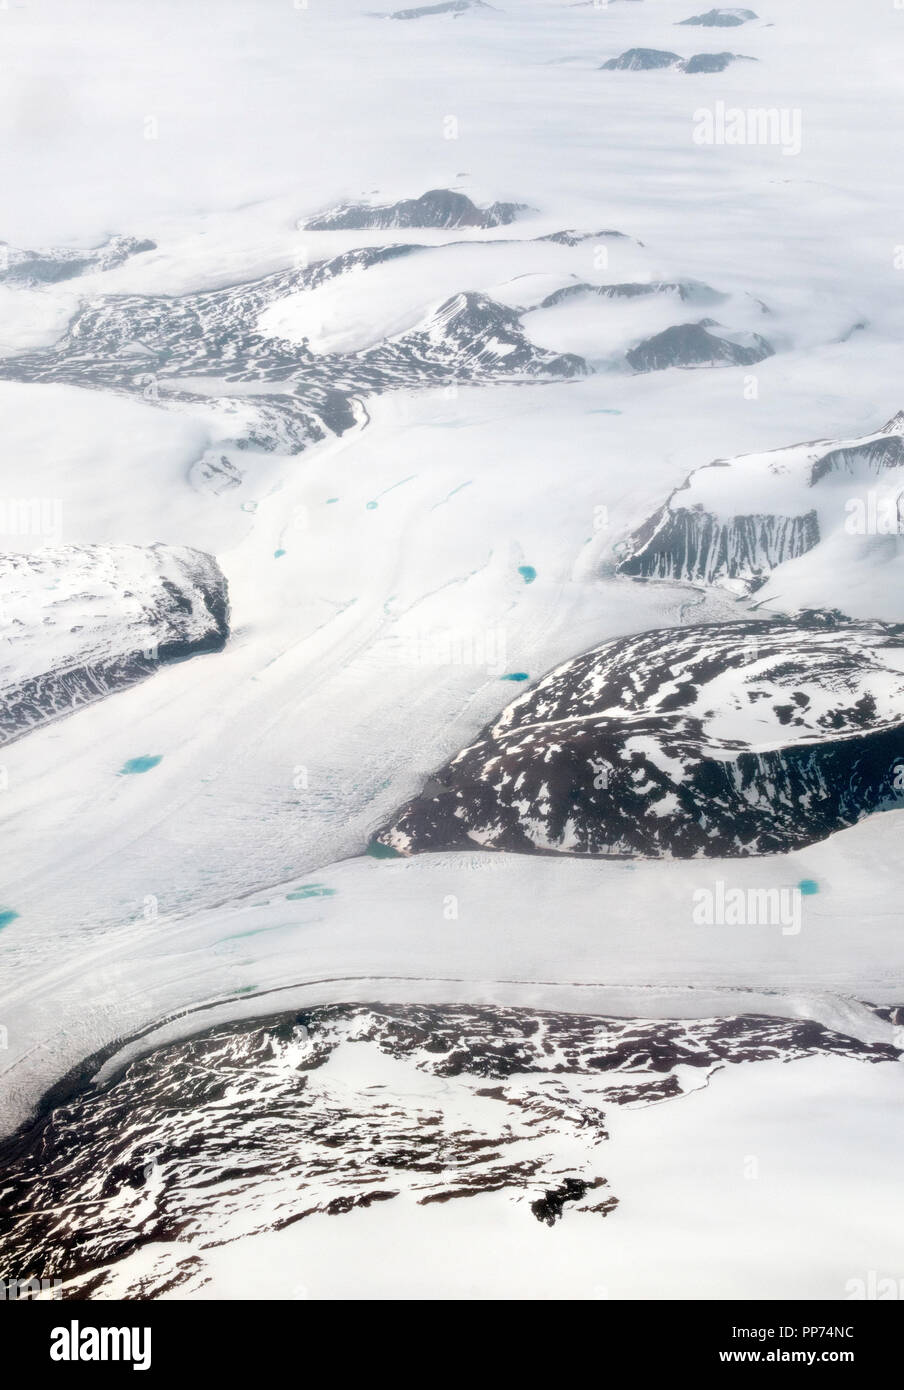 Vue aérienne du Groenland, glaciers, fonte des glaciers, l'écoulement des glaces et des piscines bleu Banque D'Images